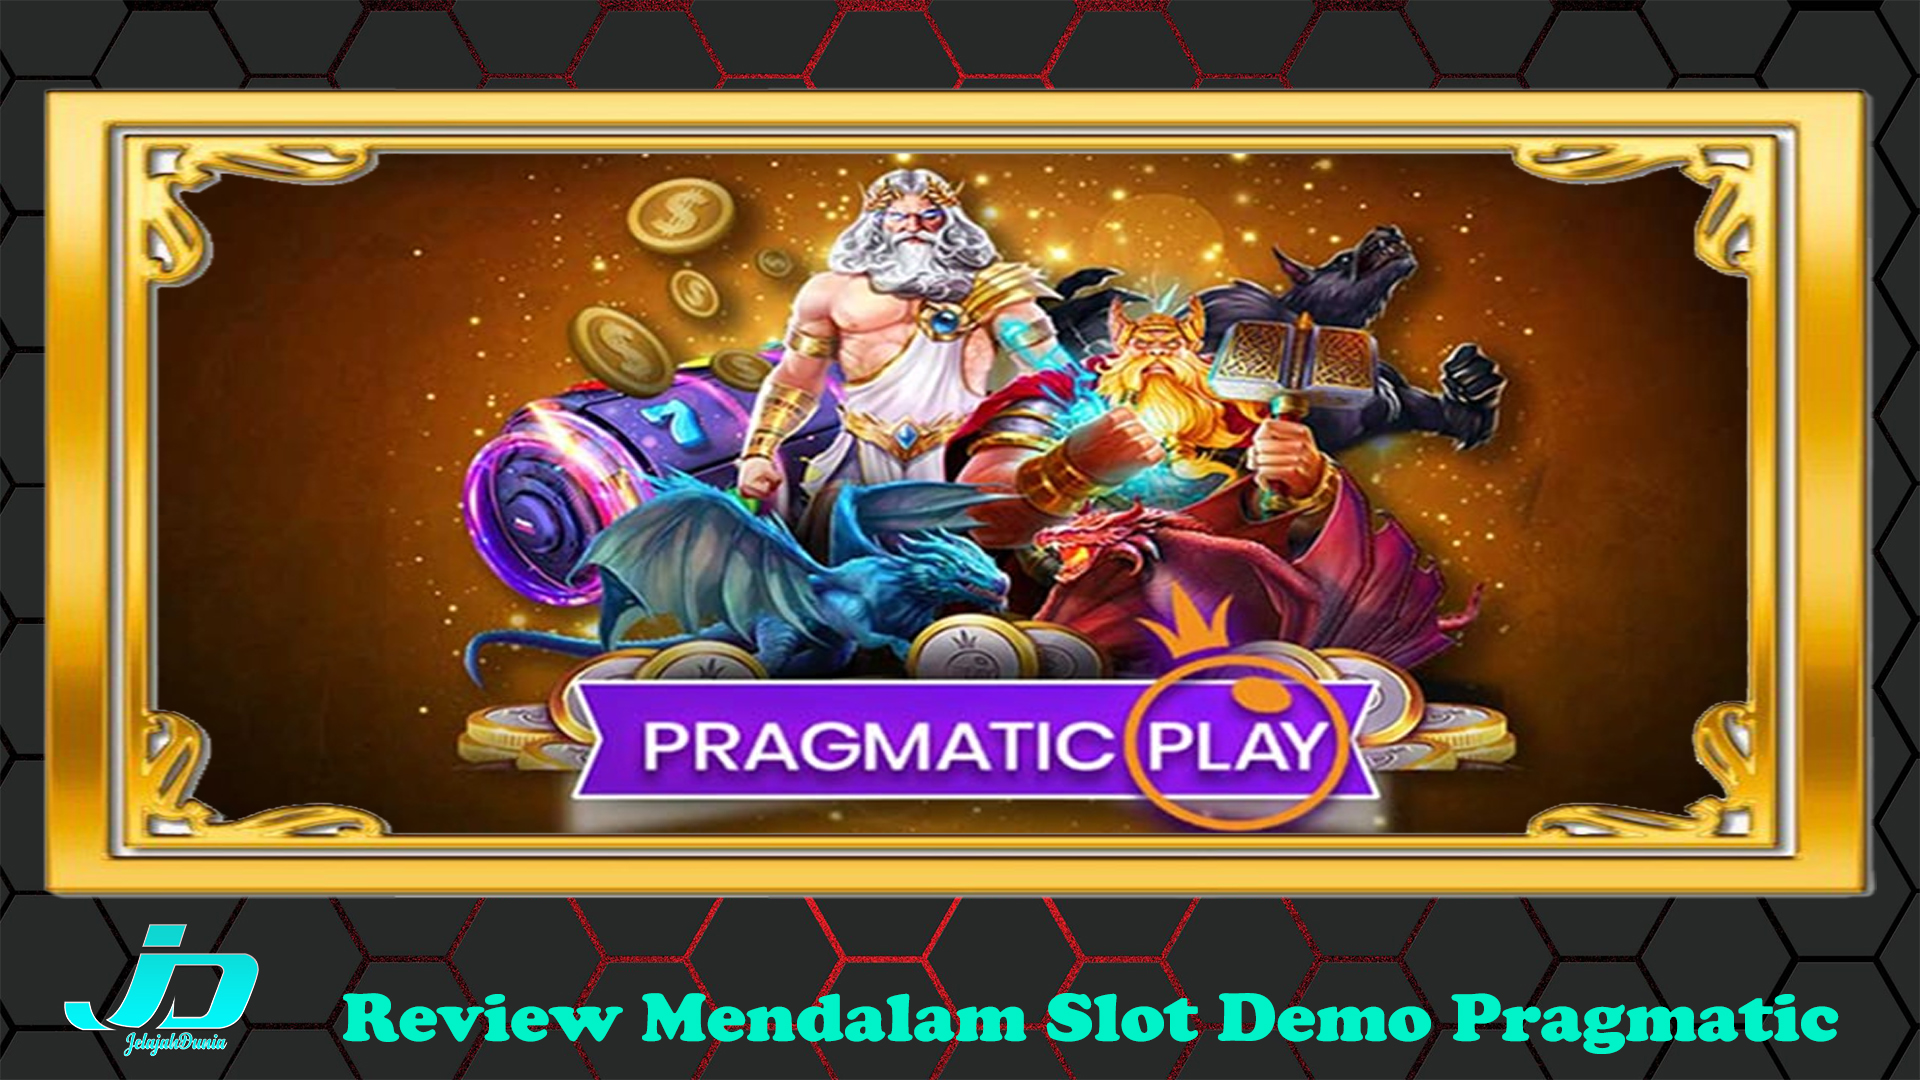 Review Mendalam Slot Demo Pragmatic